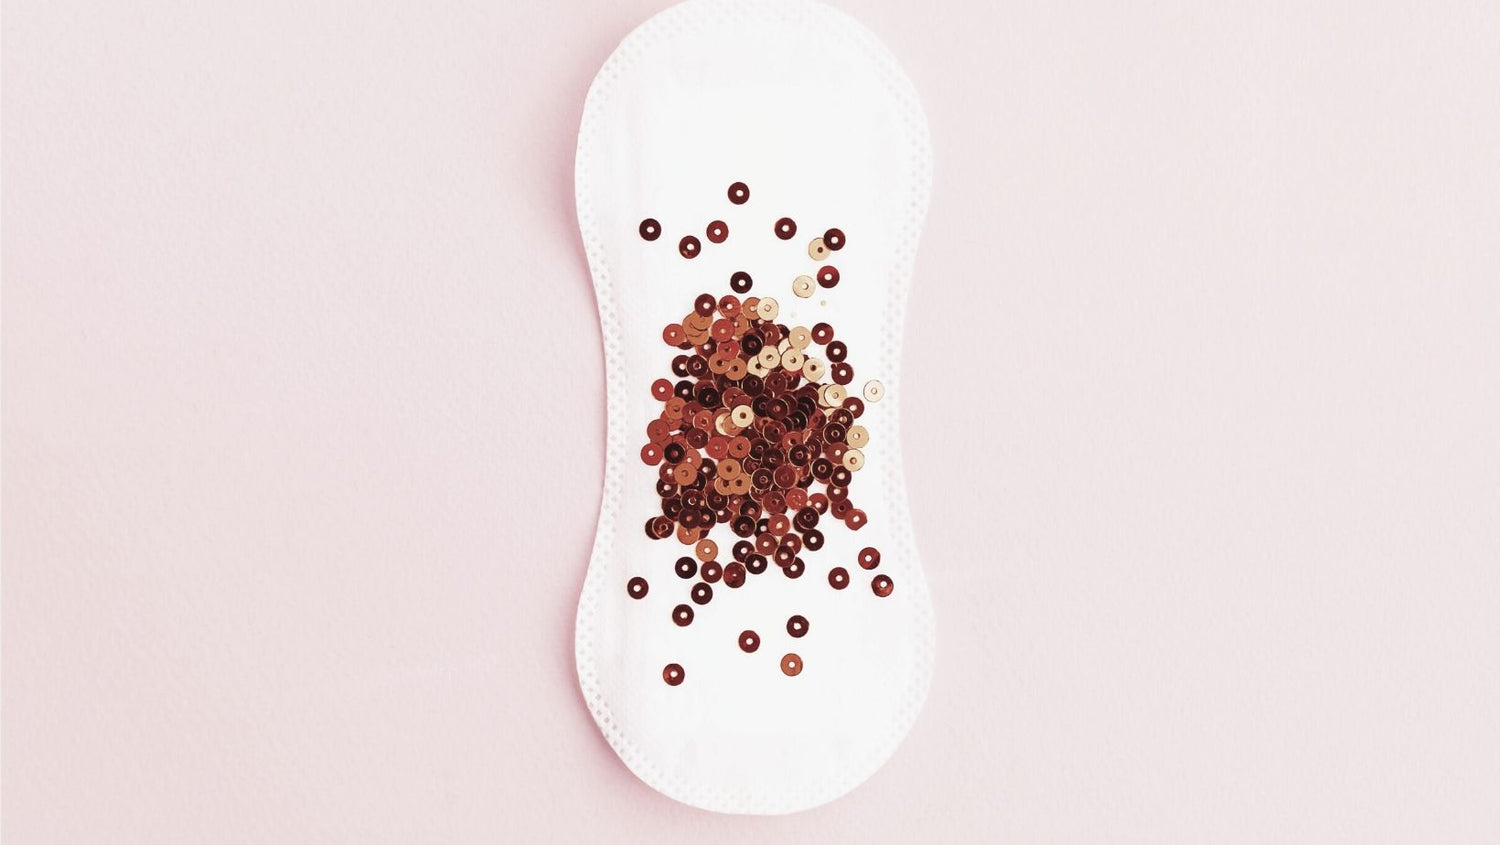 Notre peau et notre cycle menstruel